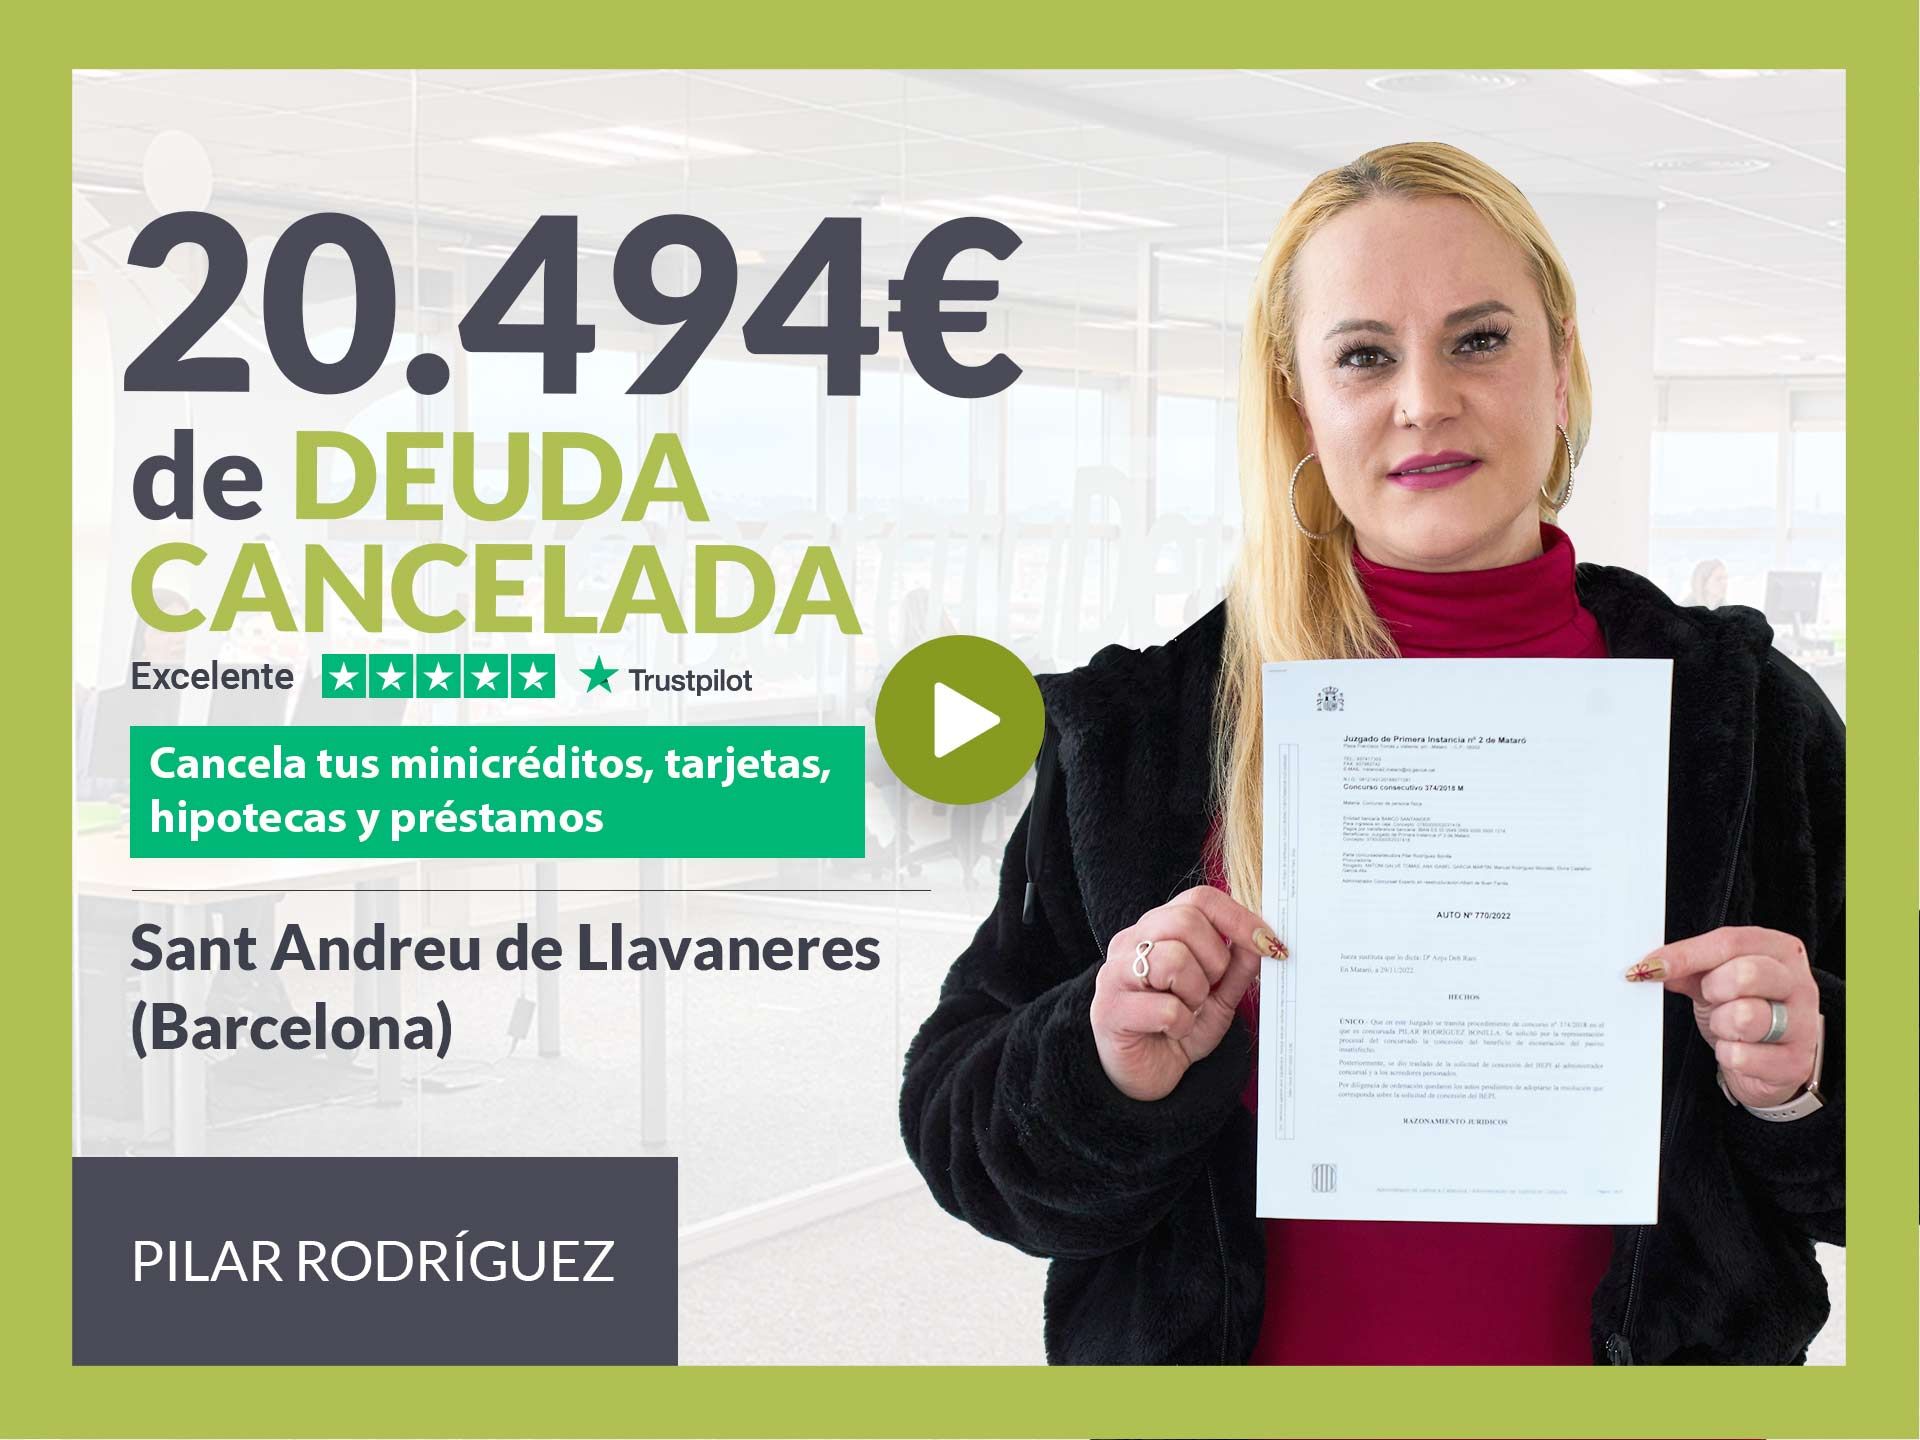 Repara tu Deuda cancela 20.494? en Sant Andreu de Llavaneres (Barcelona) con la Ley de Segunda Oportunidad